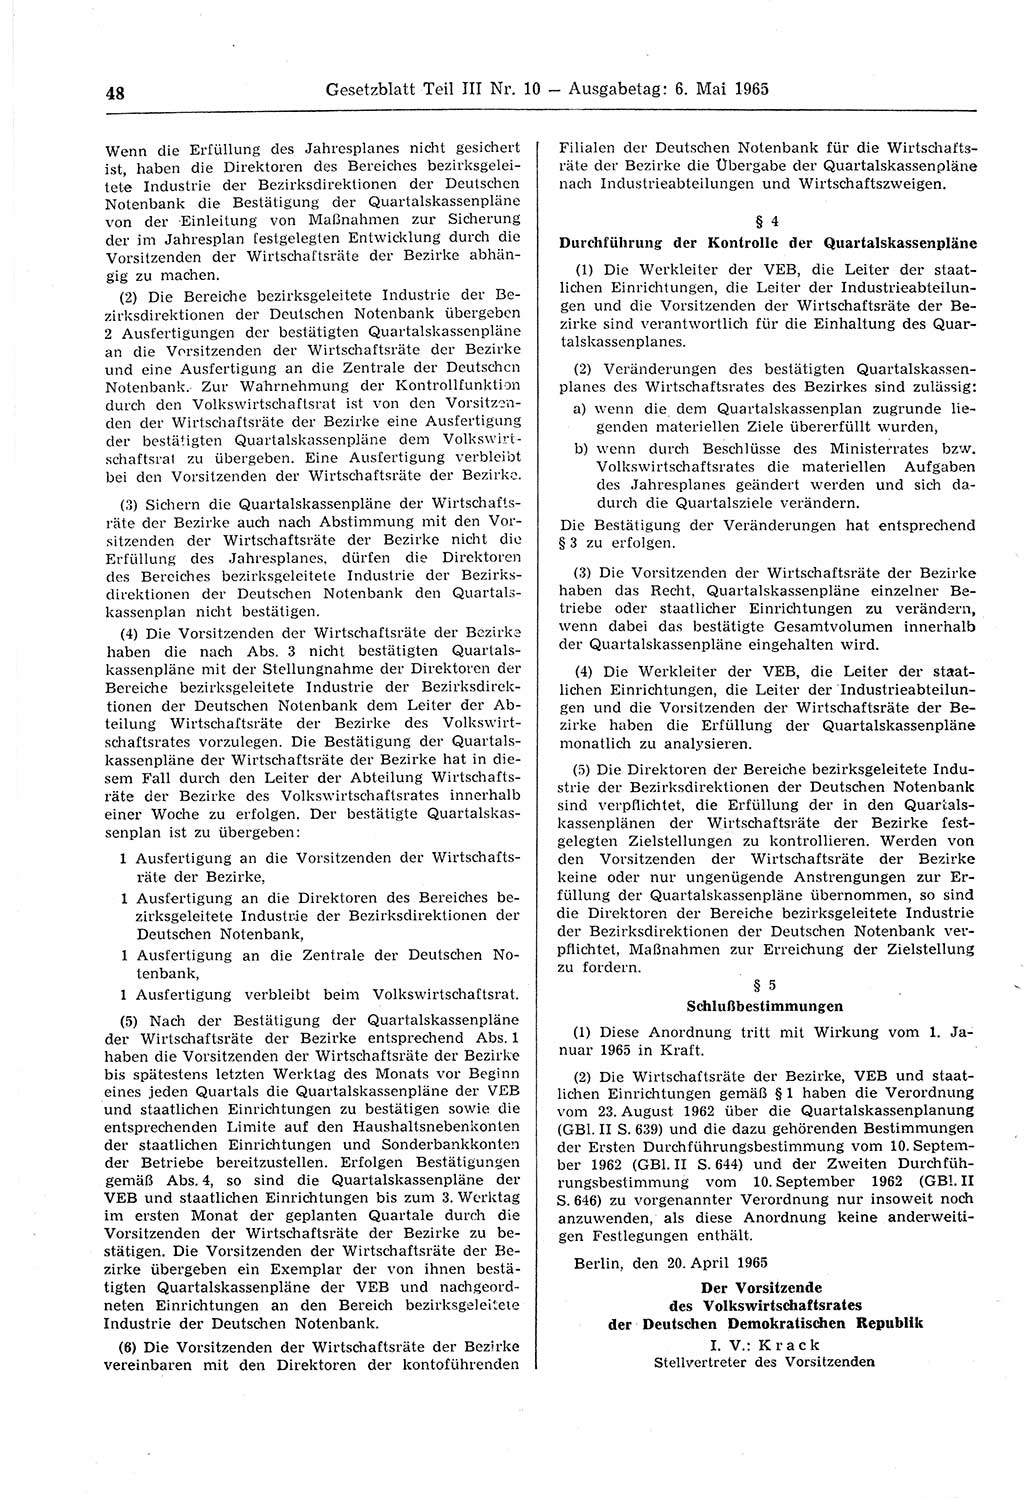 Gesetzblatt (GBl.) der Deutschen Demokratischen Republik (DDR) Teil ⅠⅠⅠ 1965, Seite 48 (GBl. DDR ⅠⅠⅠ 1965, S. 48)